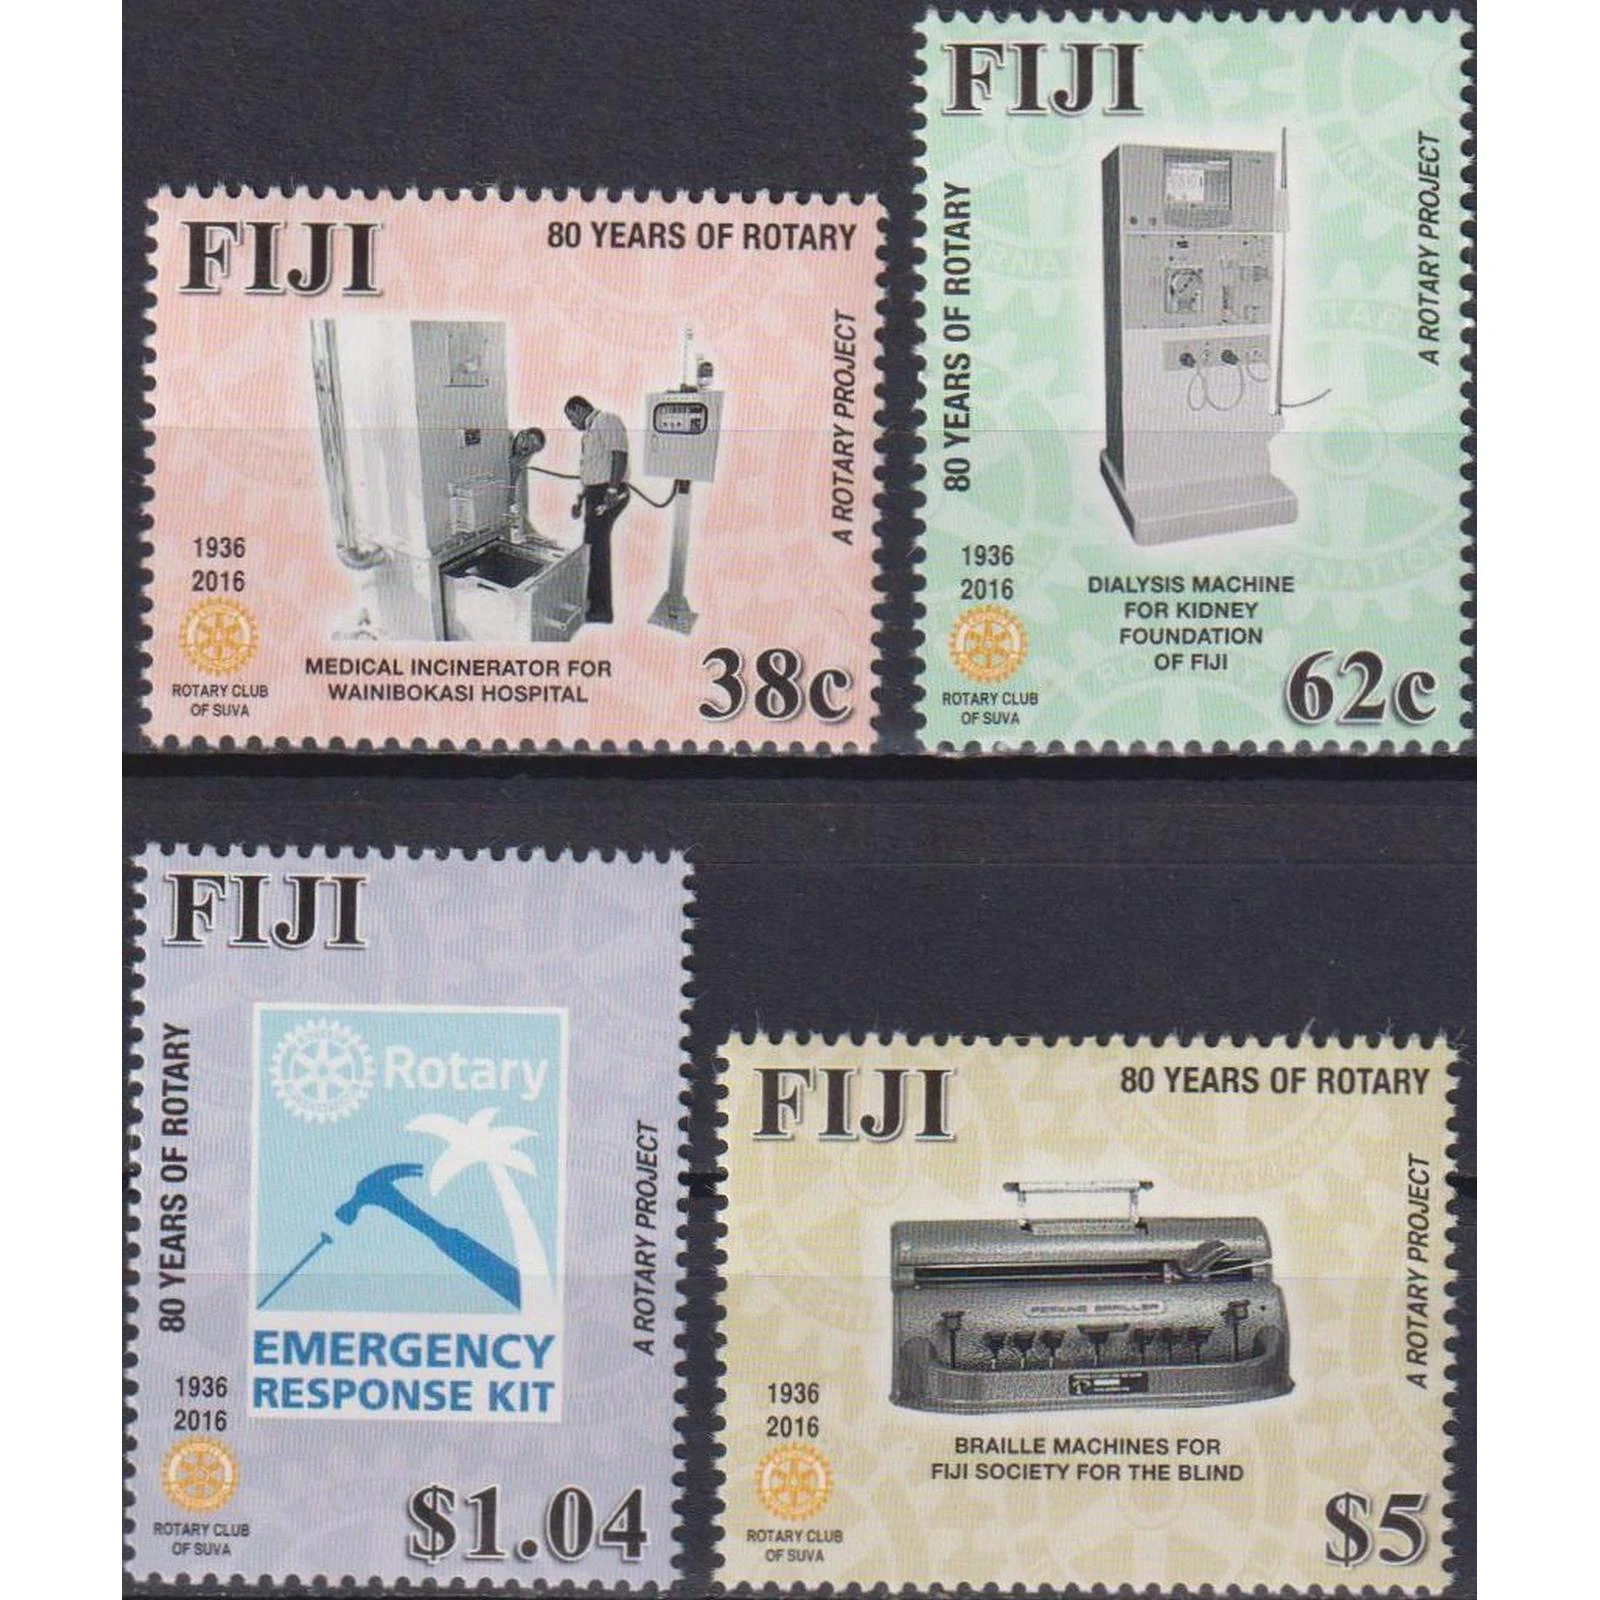 Systematically Exquisite Politics Znaczek pocztowy Fiji 2016 "80. Rocznica rotacji na fidżi" mnh technologia,  nauka i technologia, filately, znaczek pocztowy, zbieranie| | - AliExpress